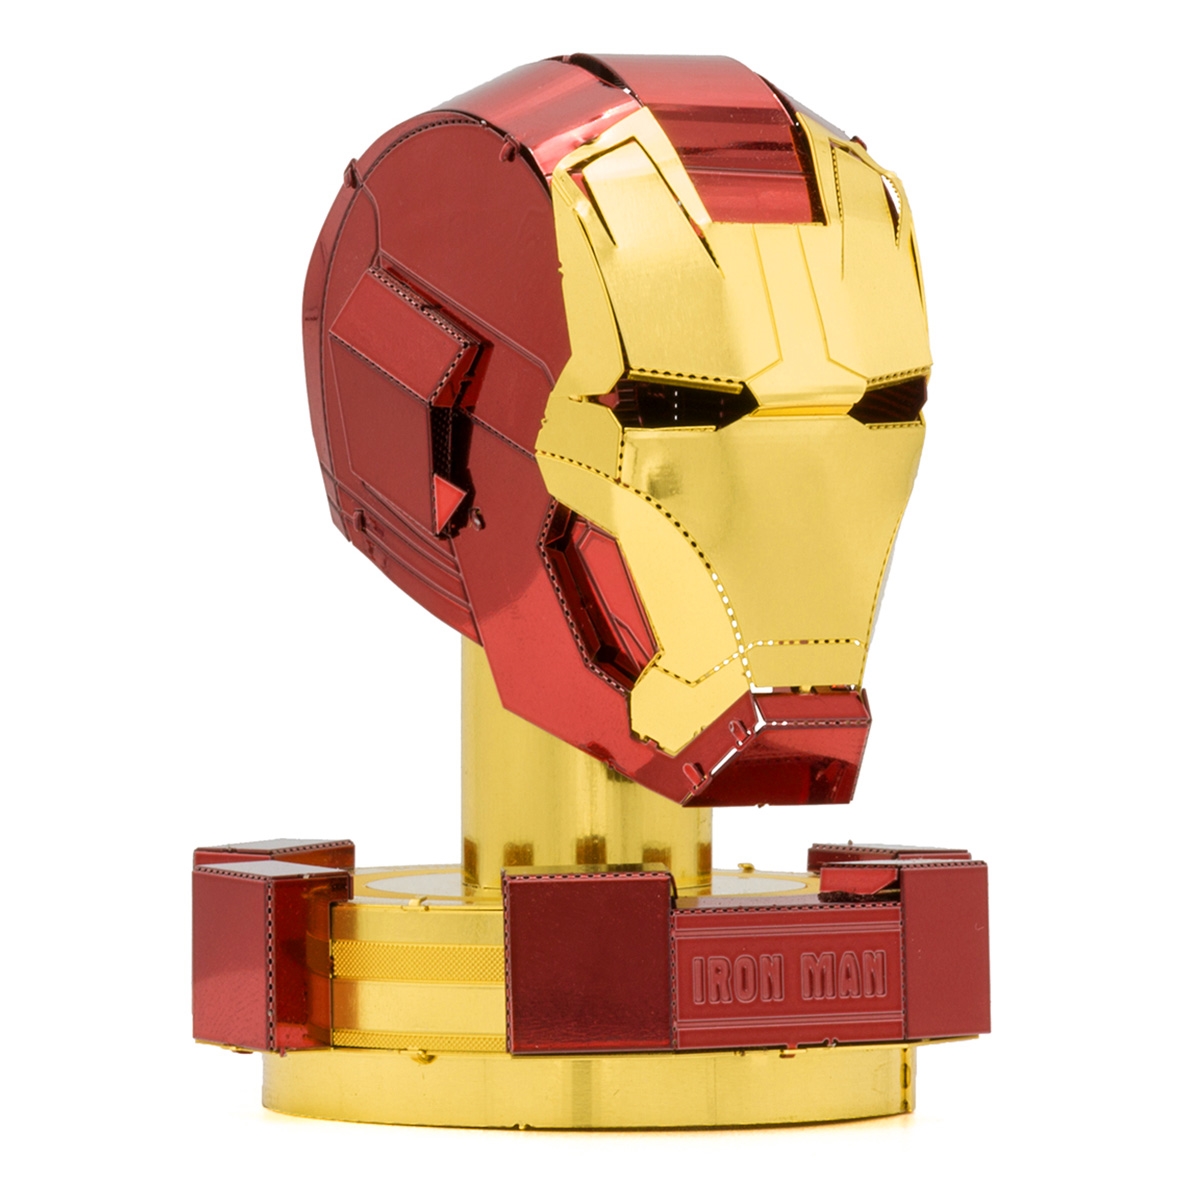 Iron Man Helmet Schematics